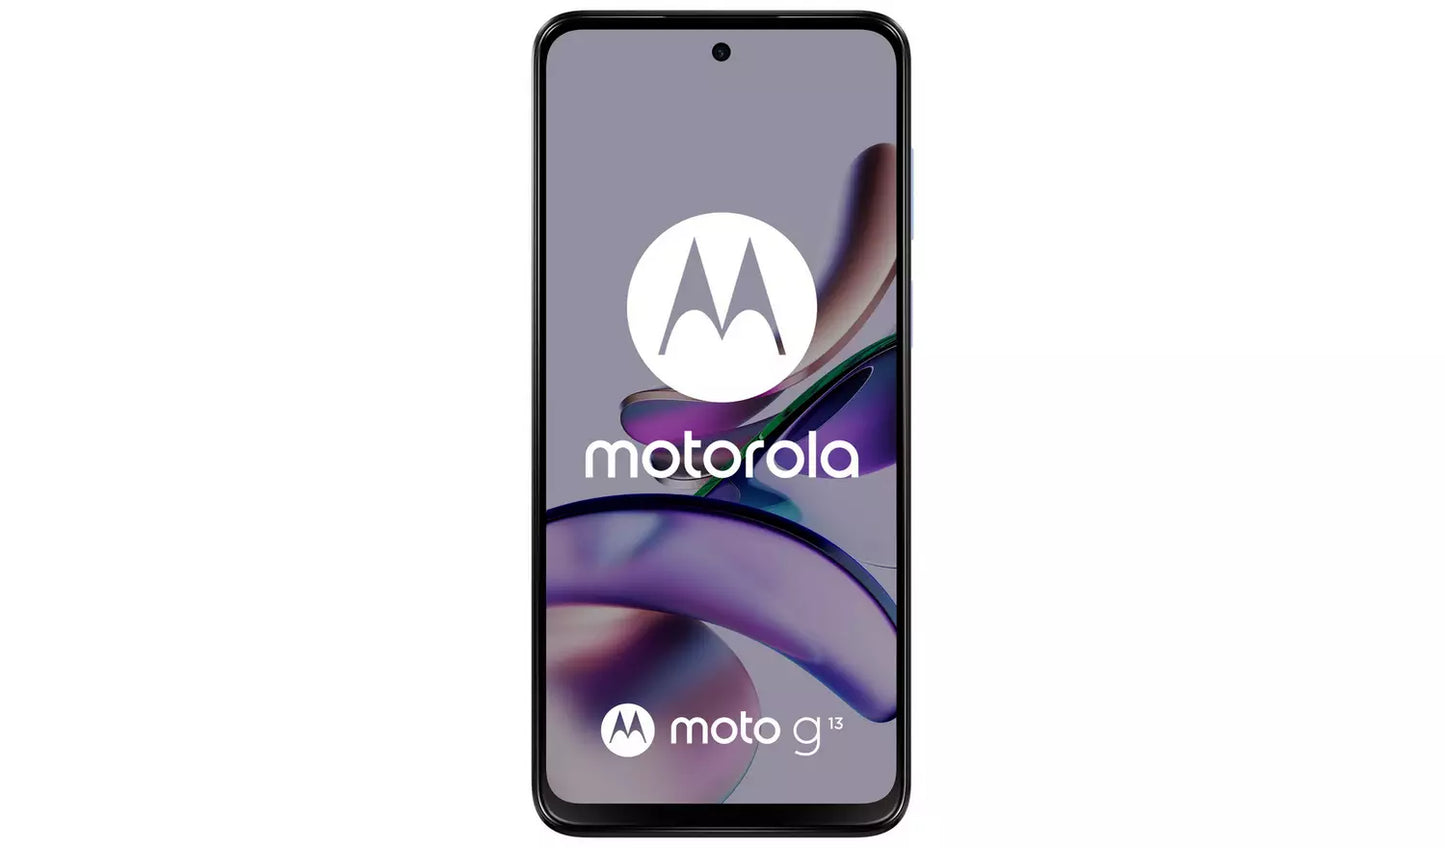 SIM Free Motorola G13 128GB Mobile Phone - Lavender Blue